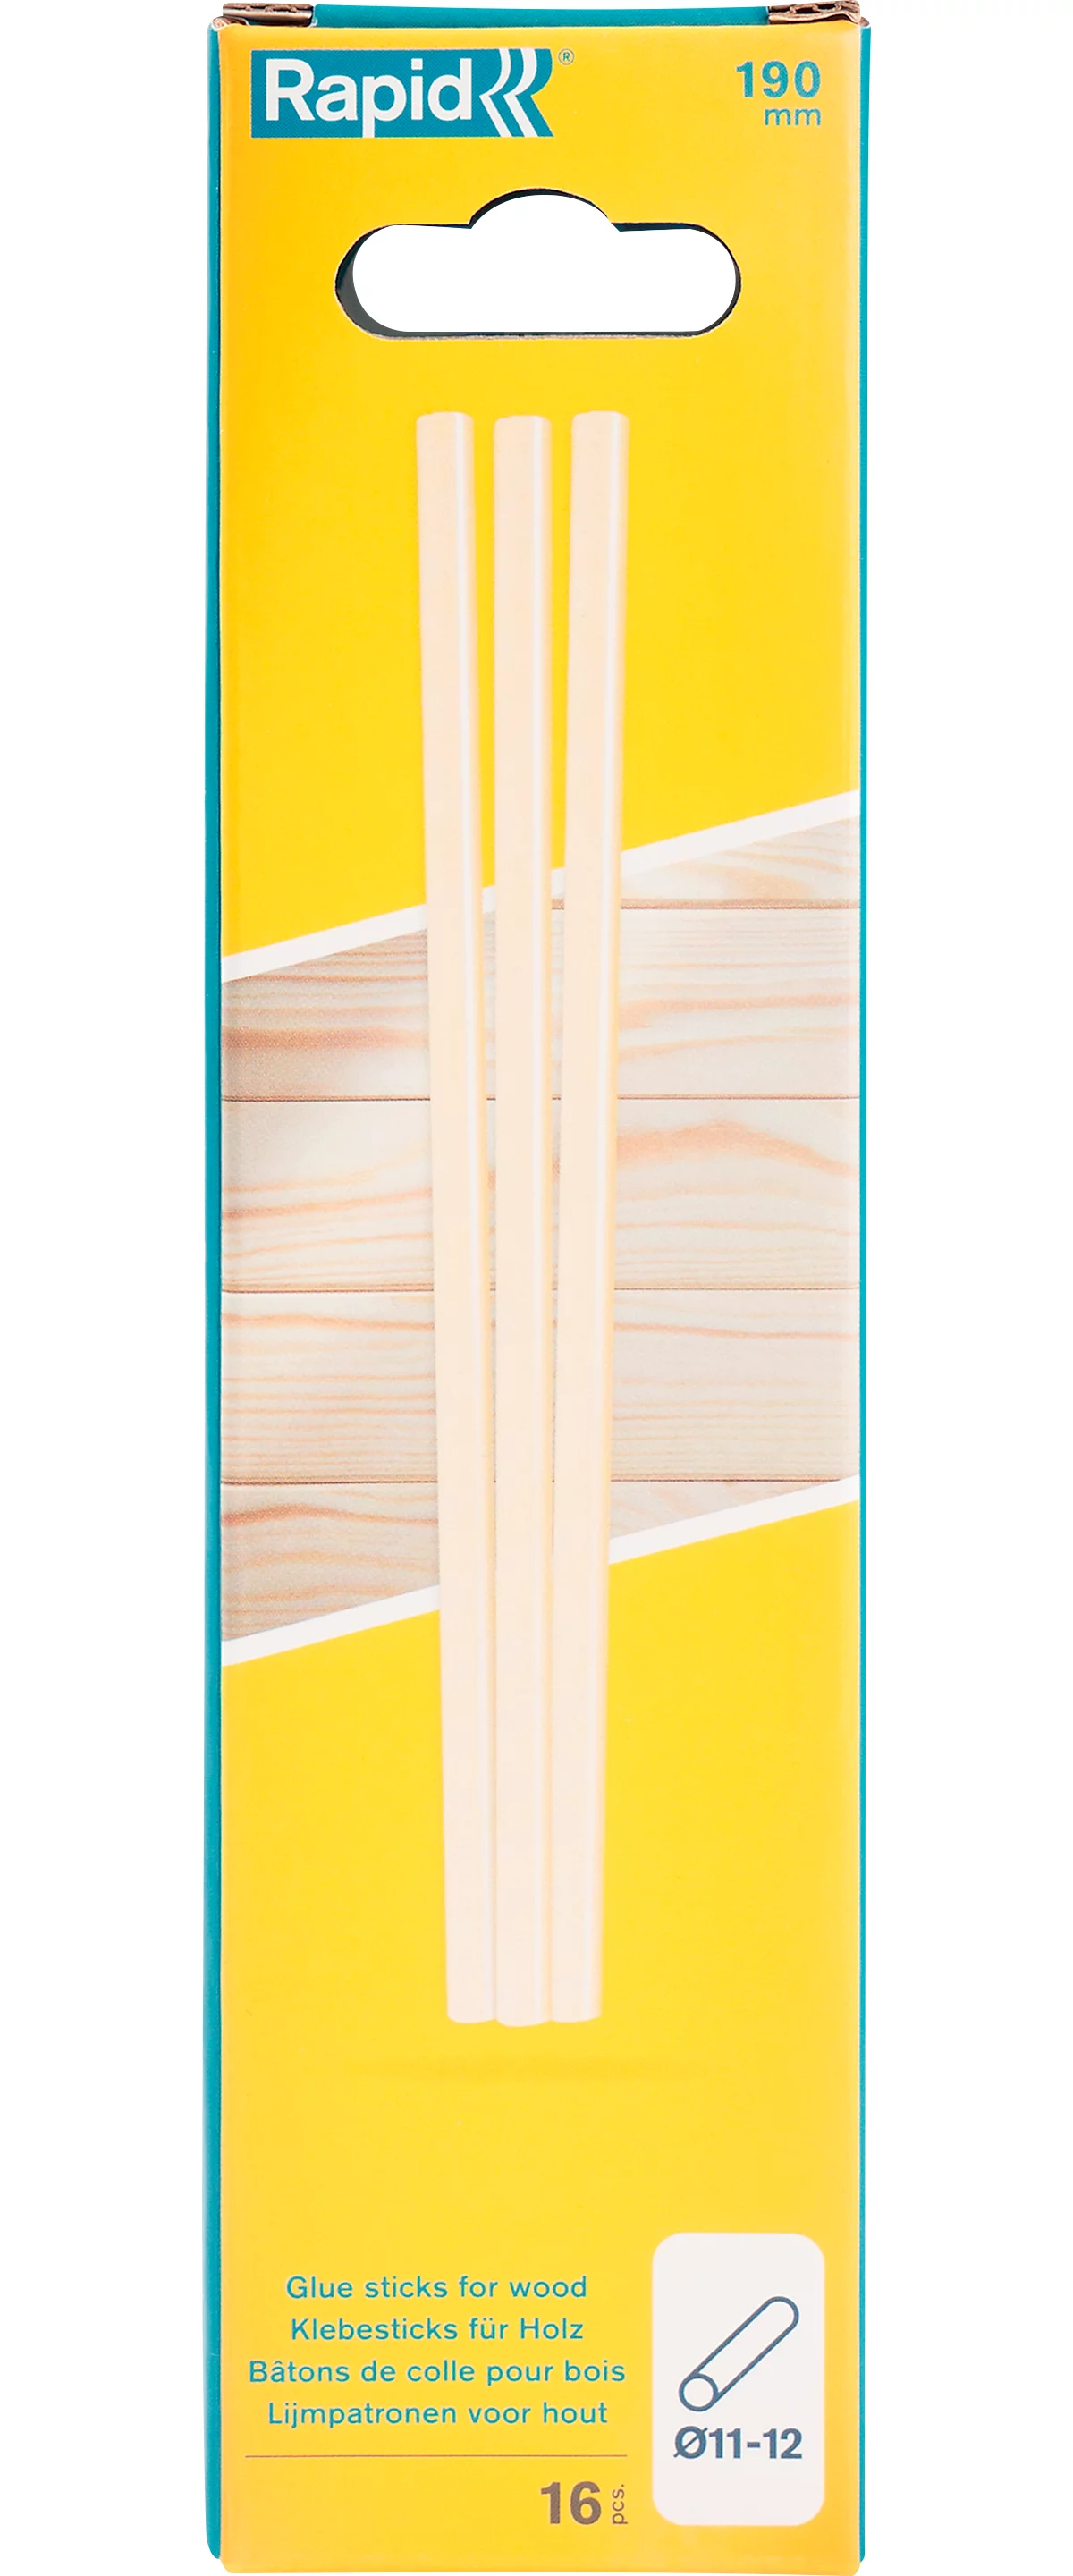 Rapid Klebesticks Holz, 12 x 190 mm, transparent, lösemittelfrei, 16 Stück